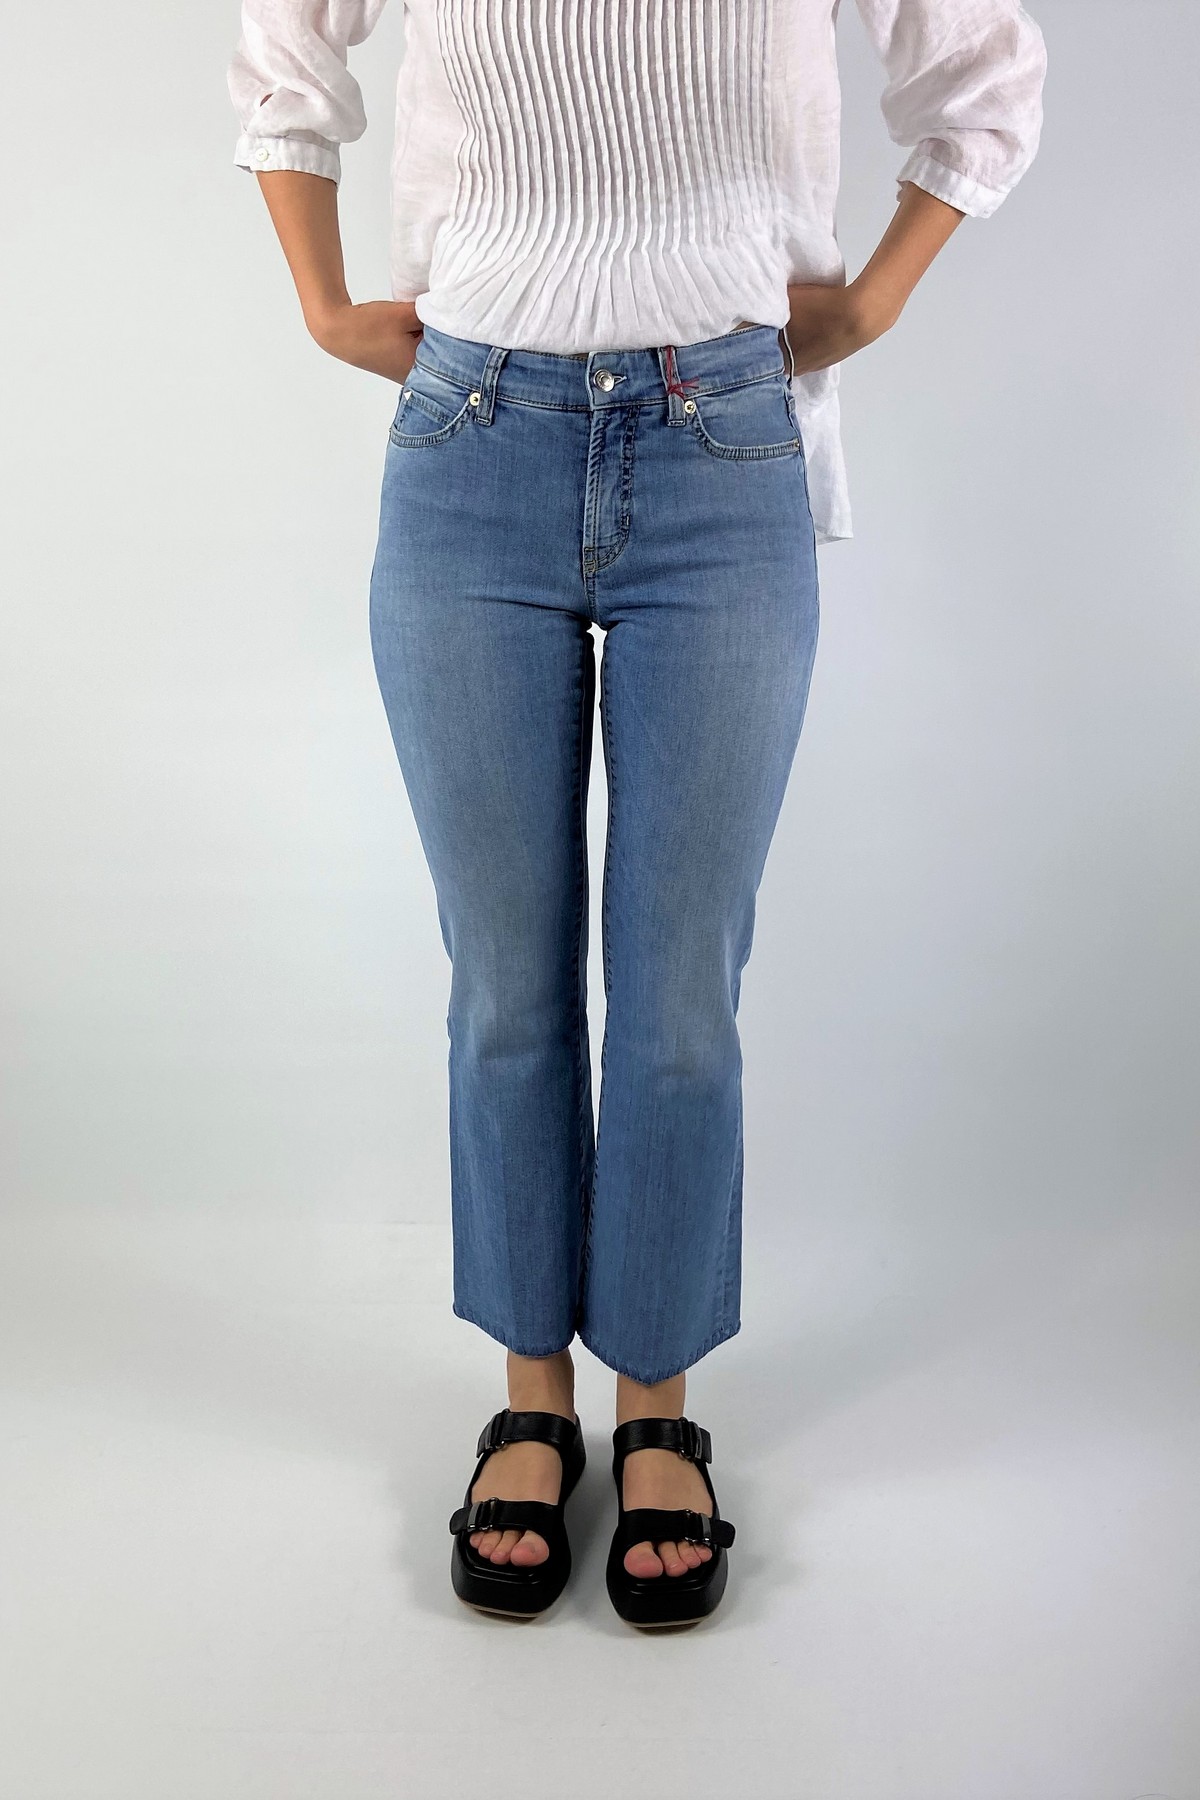 Jeans met detail in de kleur denim blue van het merk Cambio